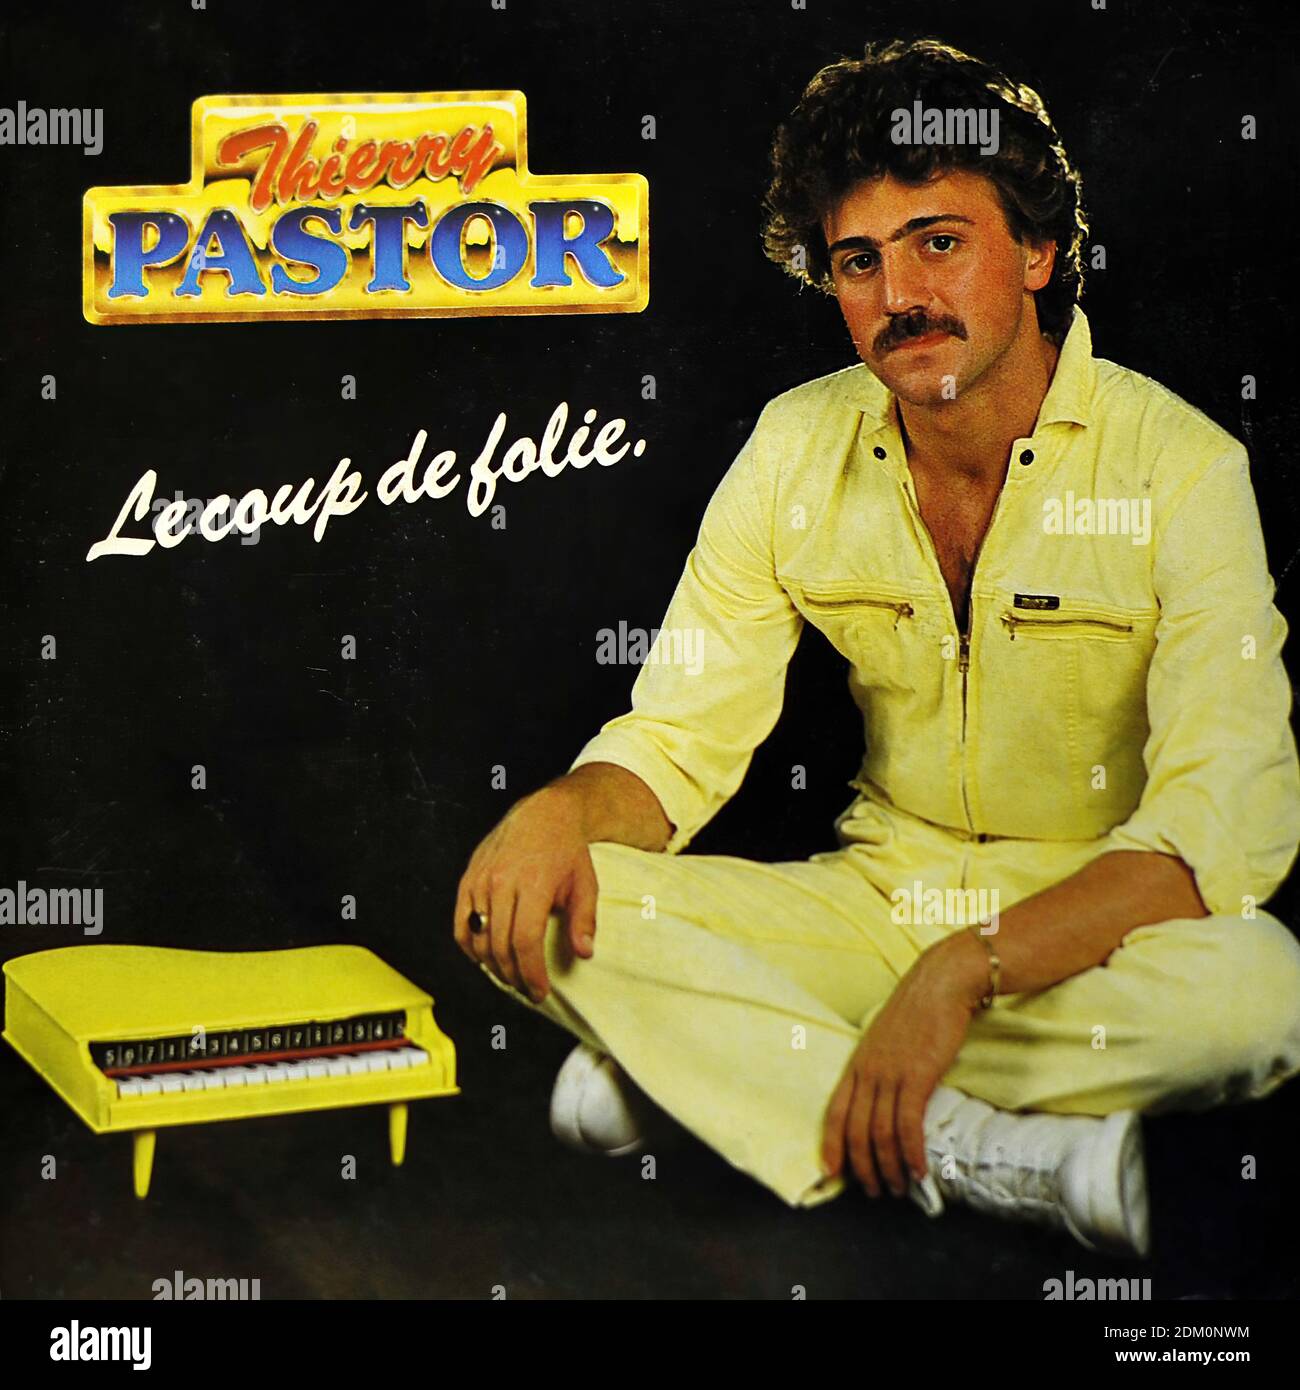 Thierry Pastor Le Coup de Folie 7 PS Single - Vintage Vinyl Record Cover  Stock Photo - Alamy